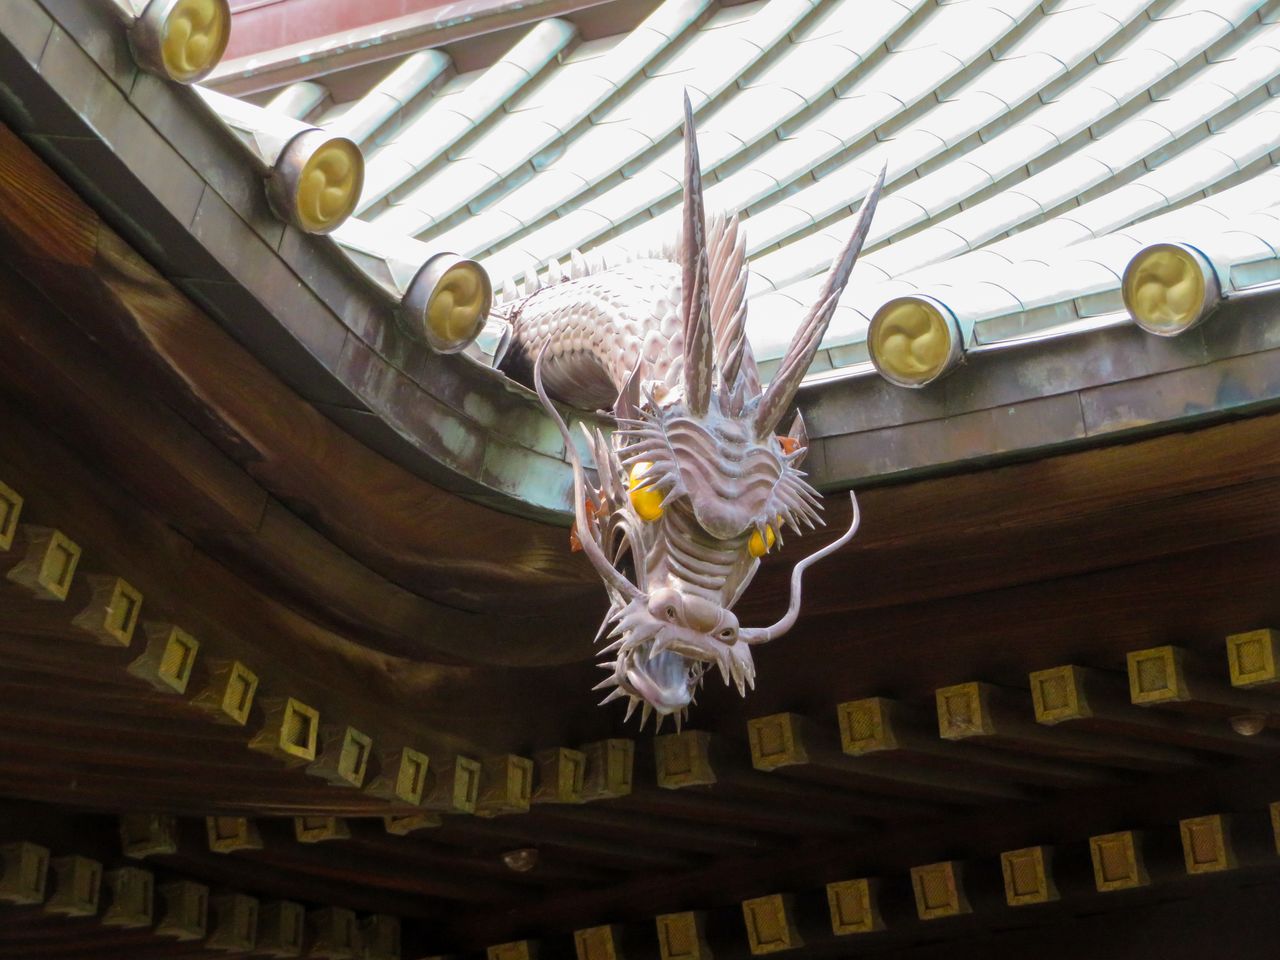 El dragón observa desde el techo del pabellón. Fotografía del autor.